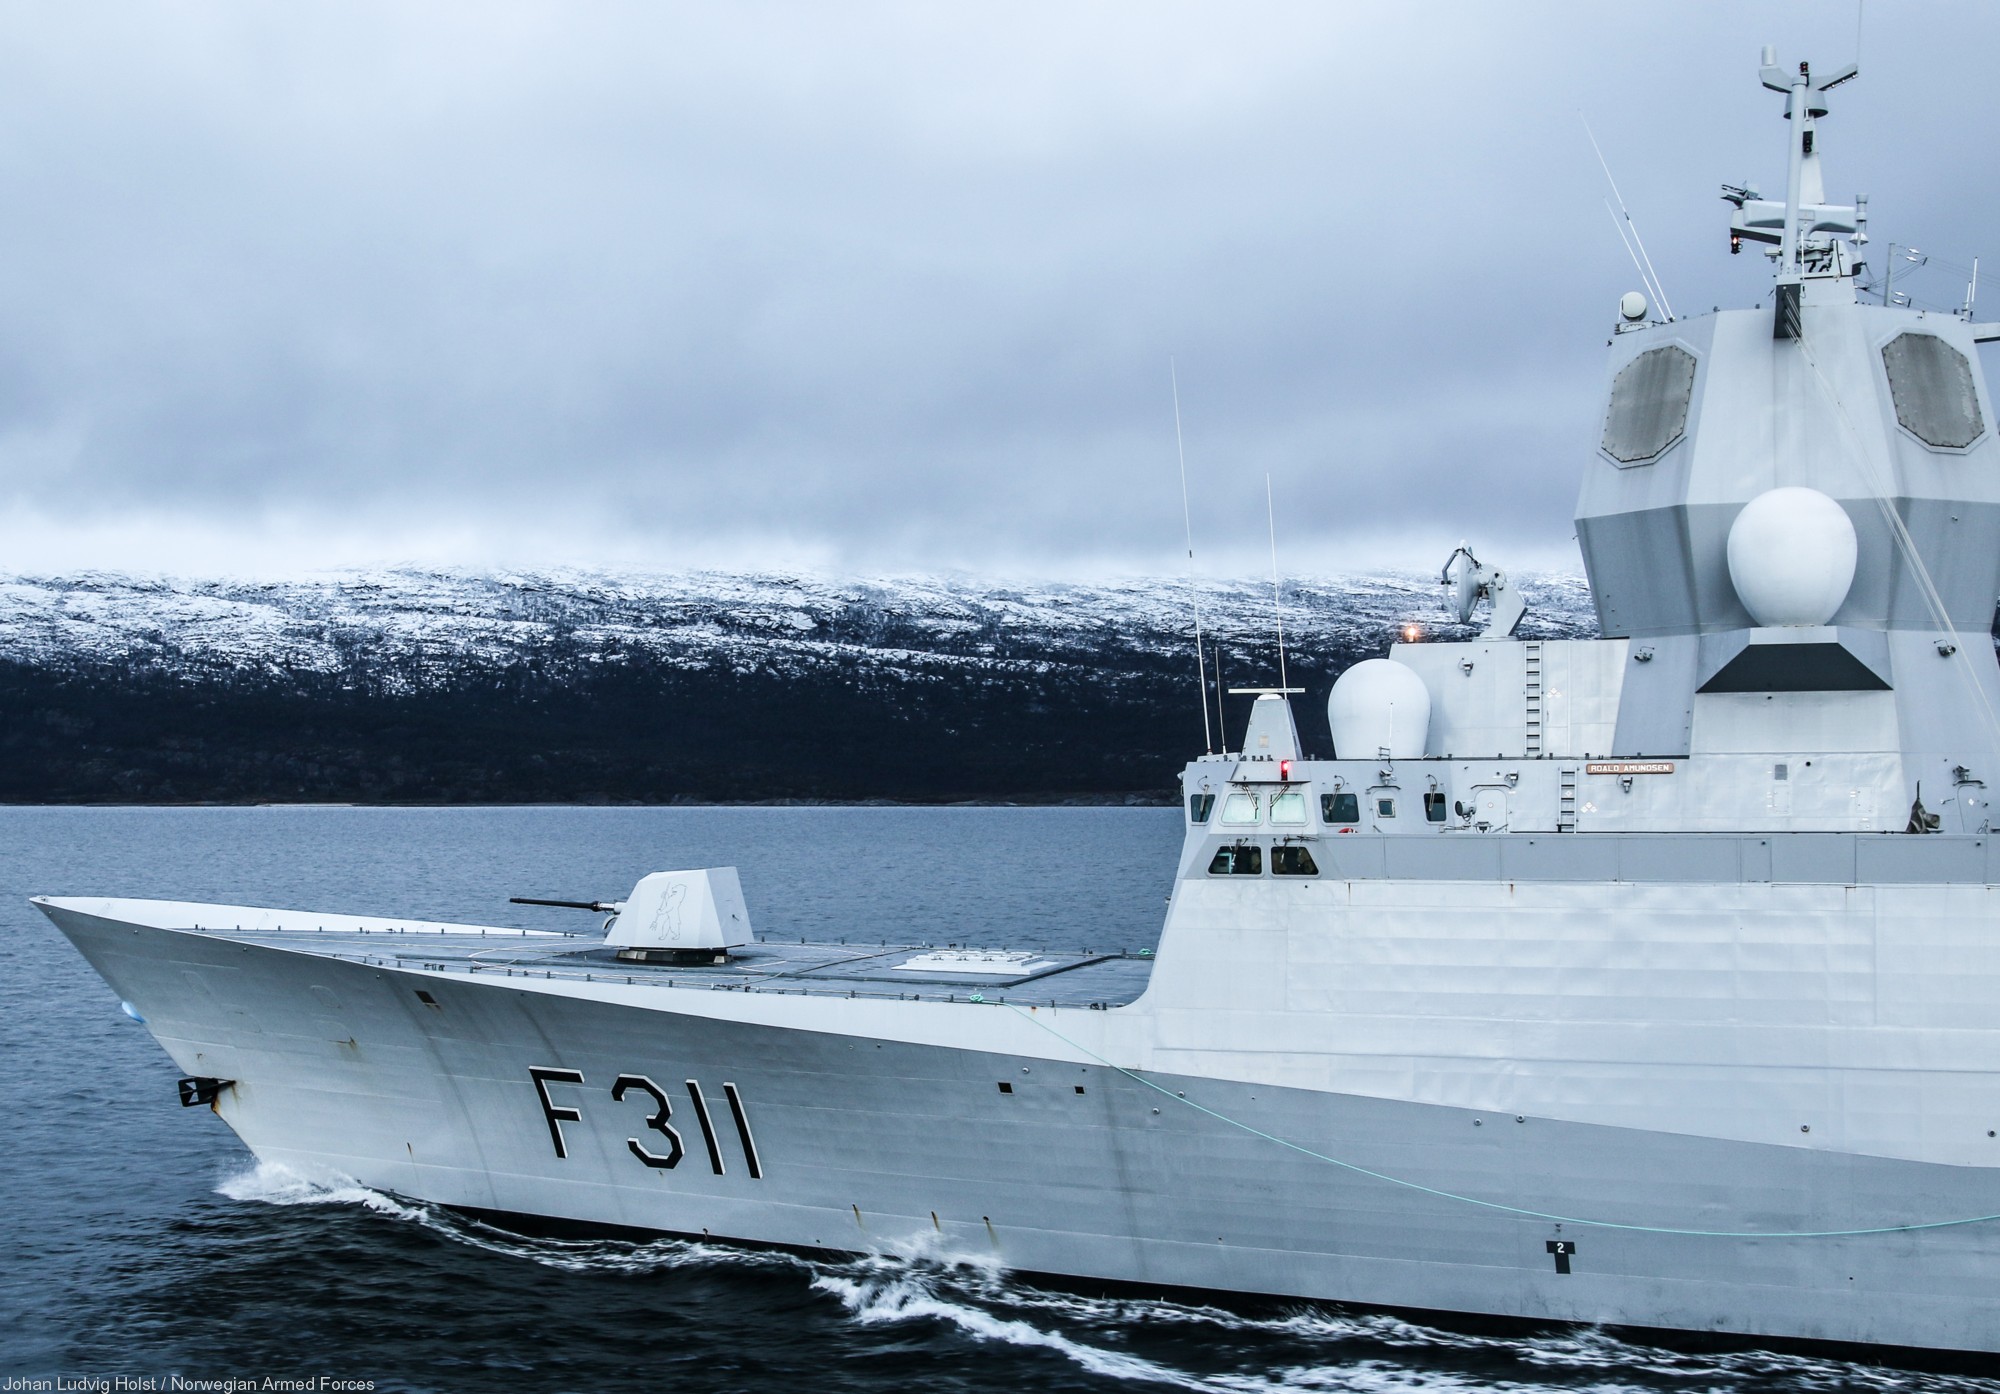 f-311 hnoms roald amundsen knm nansen class frigate royal norwegian navy sjoforsvaret 54